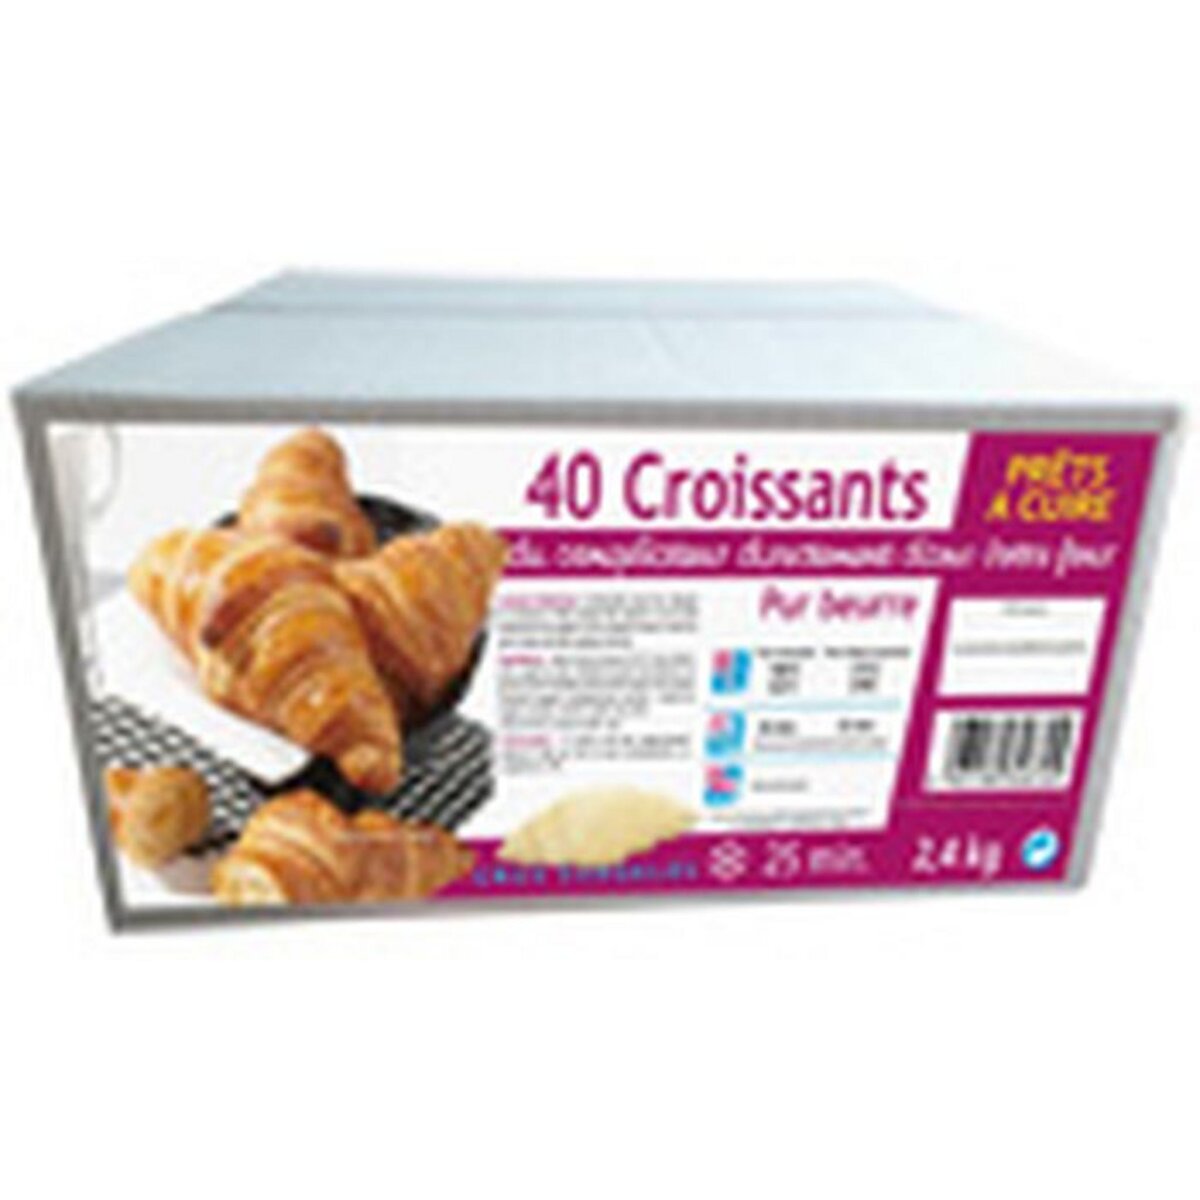 PANAVI Croissants pur beurre prêts à cuire 40 pièces 2,4kg